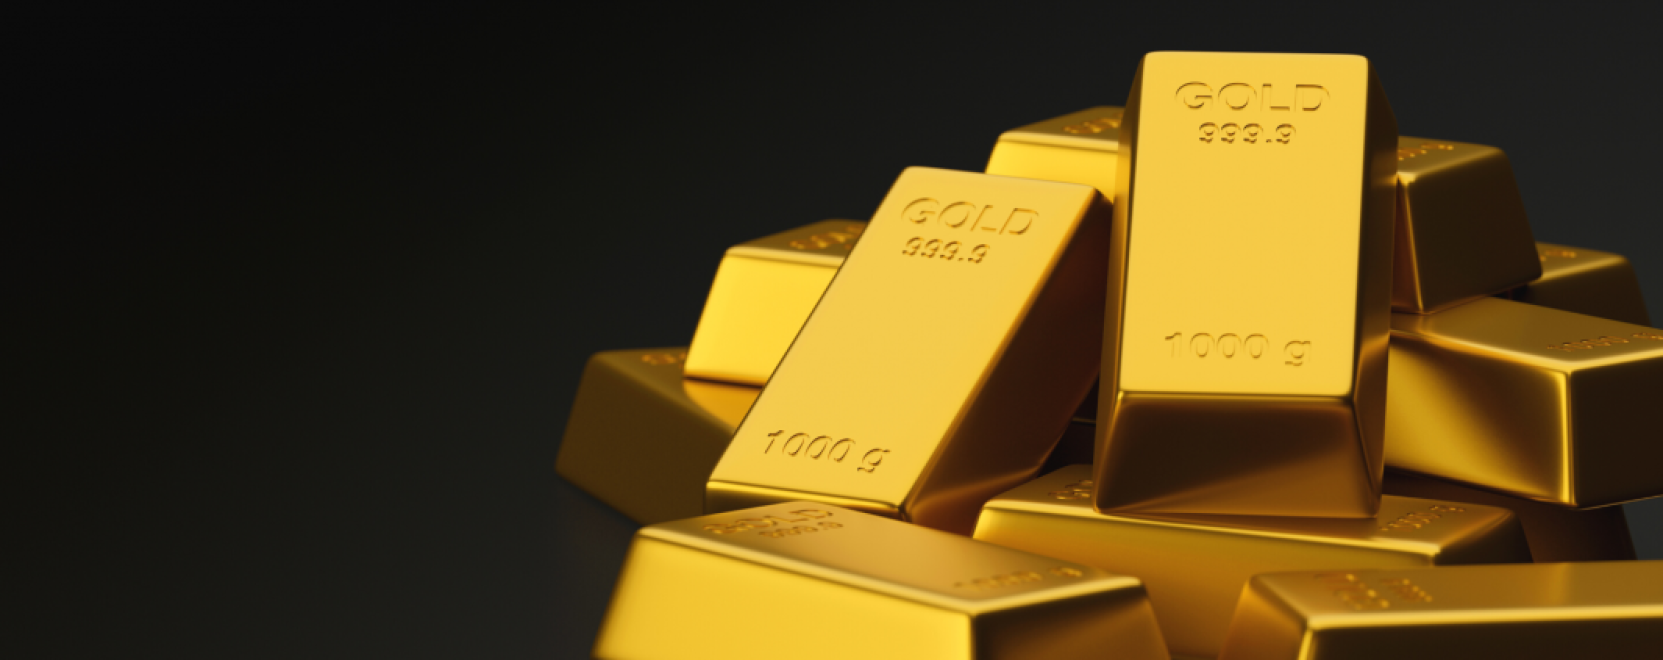 Arany mint befektetési eszköz – Miért is ne?